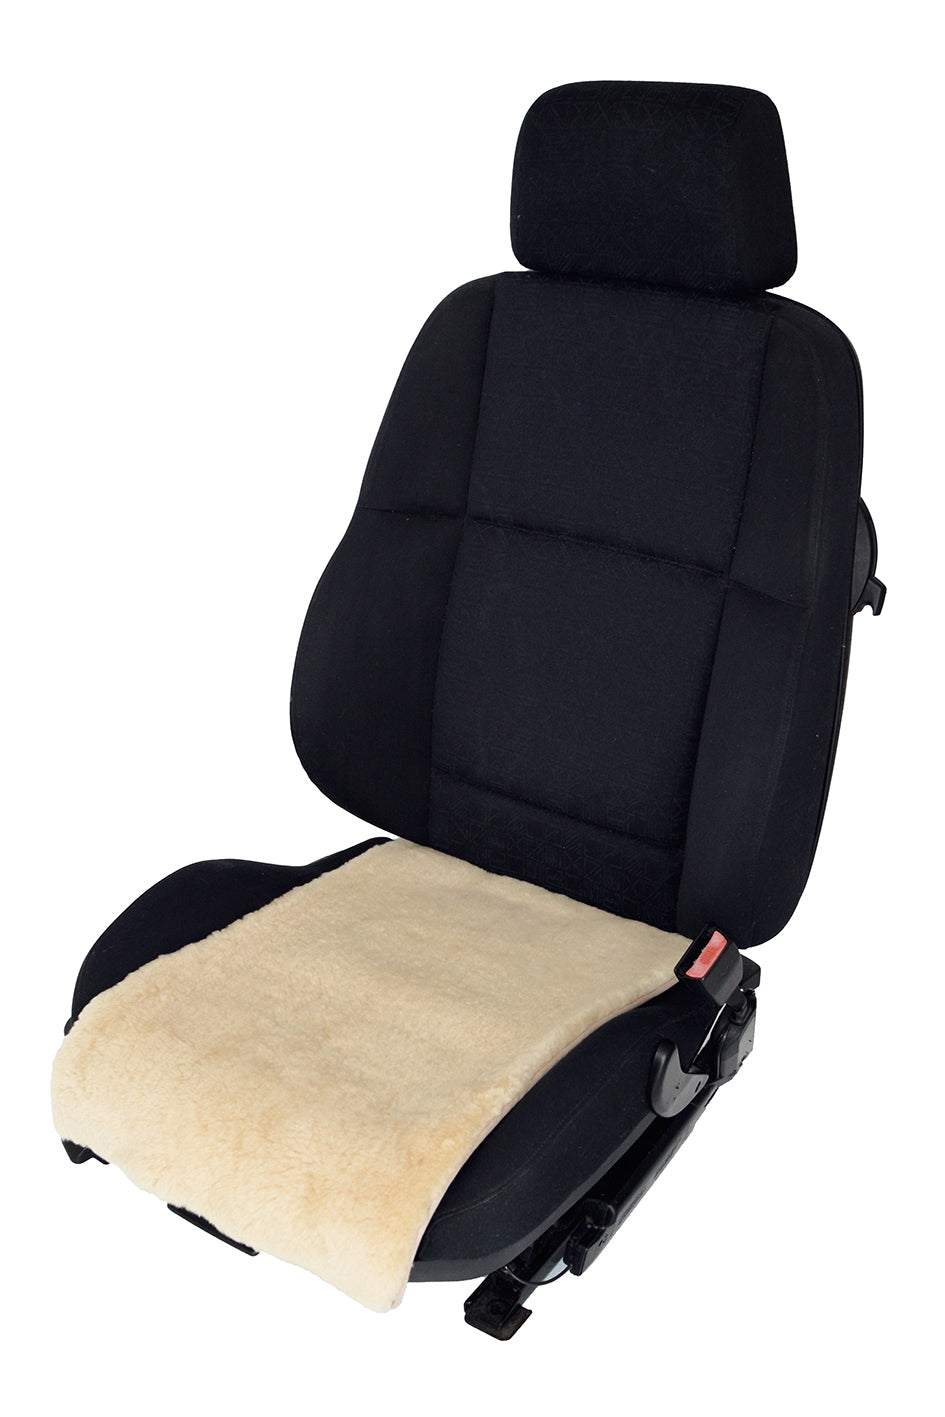 Universal Auto Sitzbezug Autositzauflage Sitzkissen Lammfell Sitzauflage  Stuhlauflage Schaffell Kissen fürs Auto Rollstuhlauflage schön (Beige,3PCS)  : : Auto & Motorrad